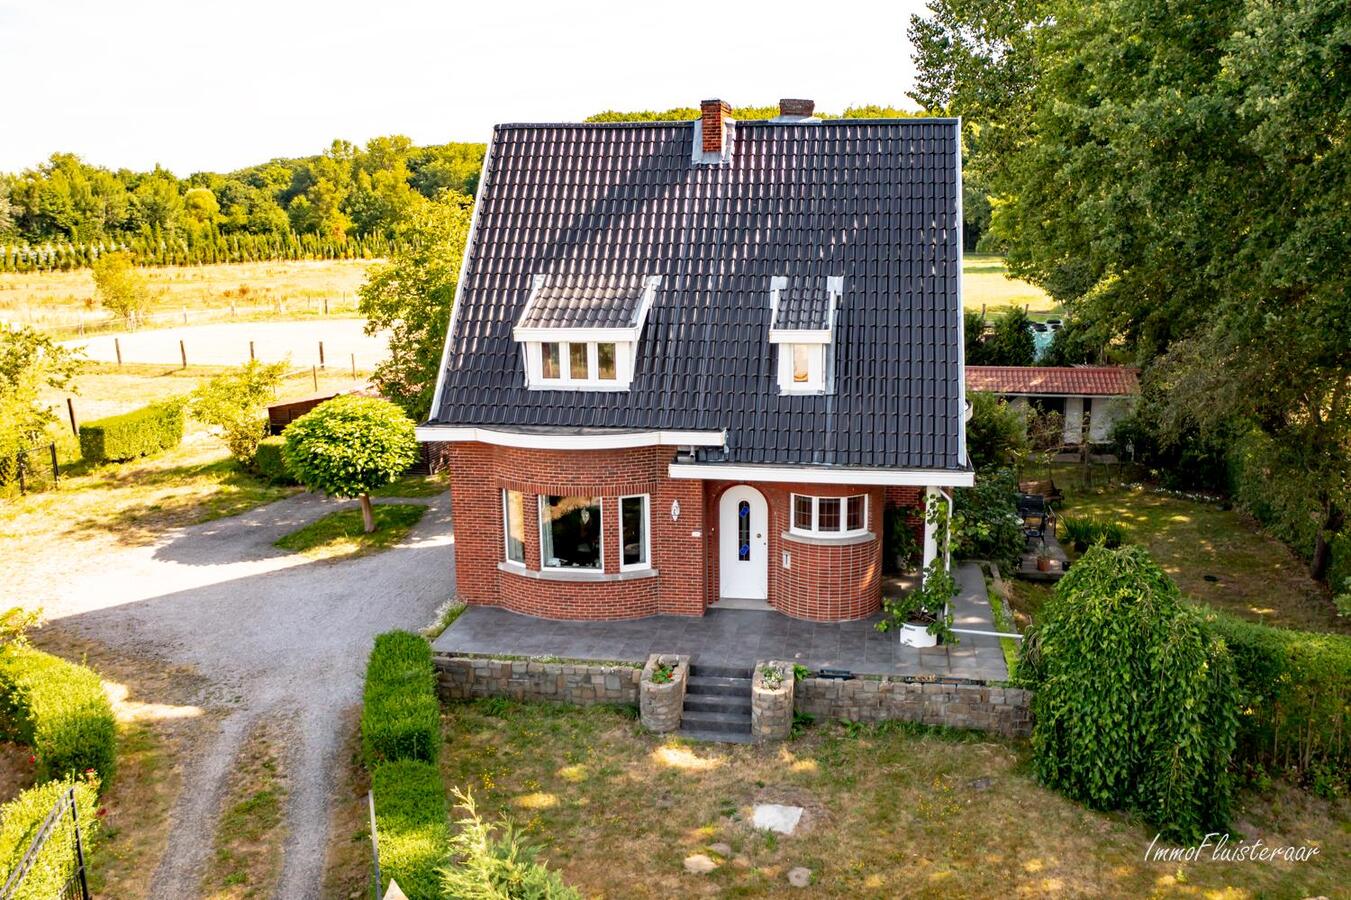 Property sold in Aarschot